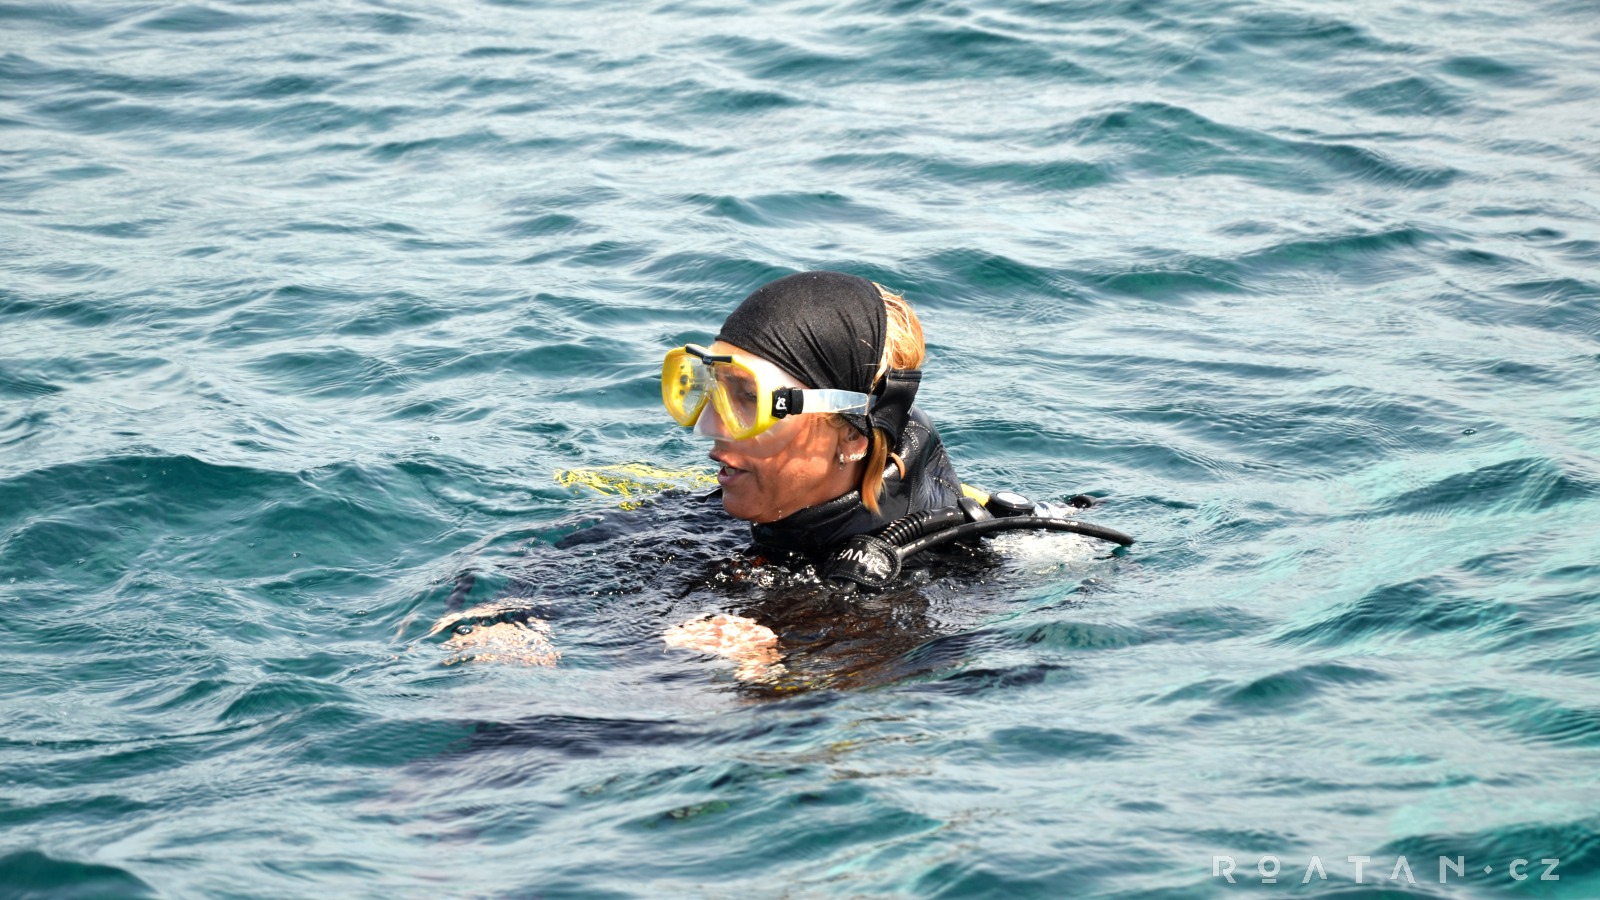 Potápění v Karibiku